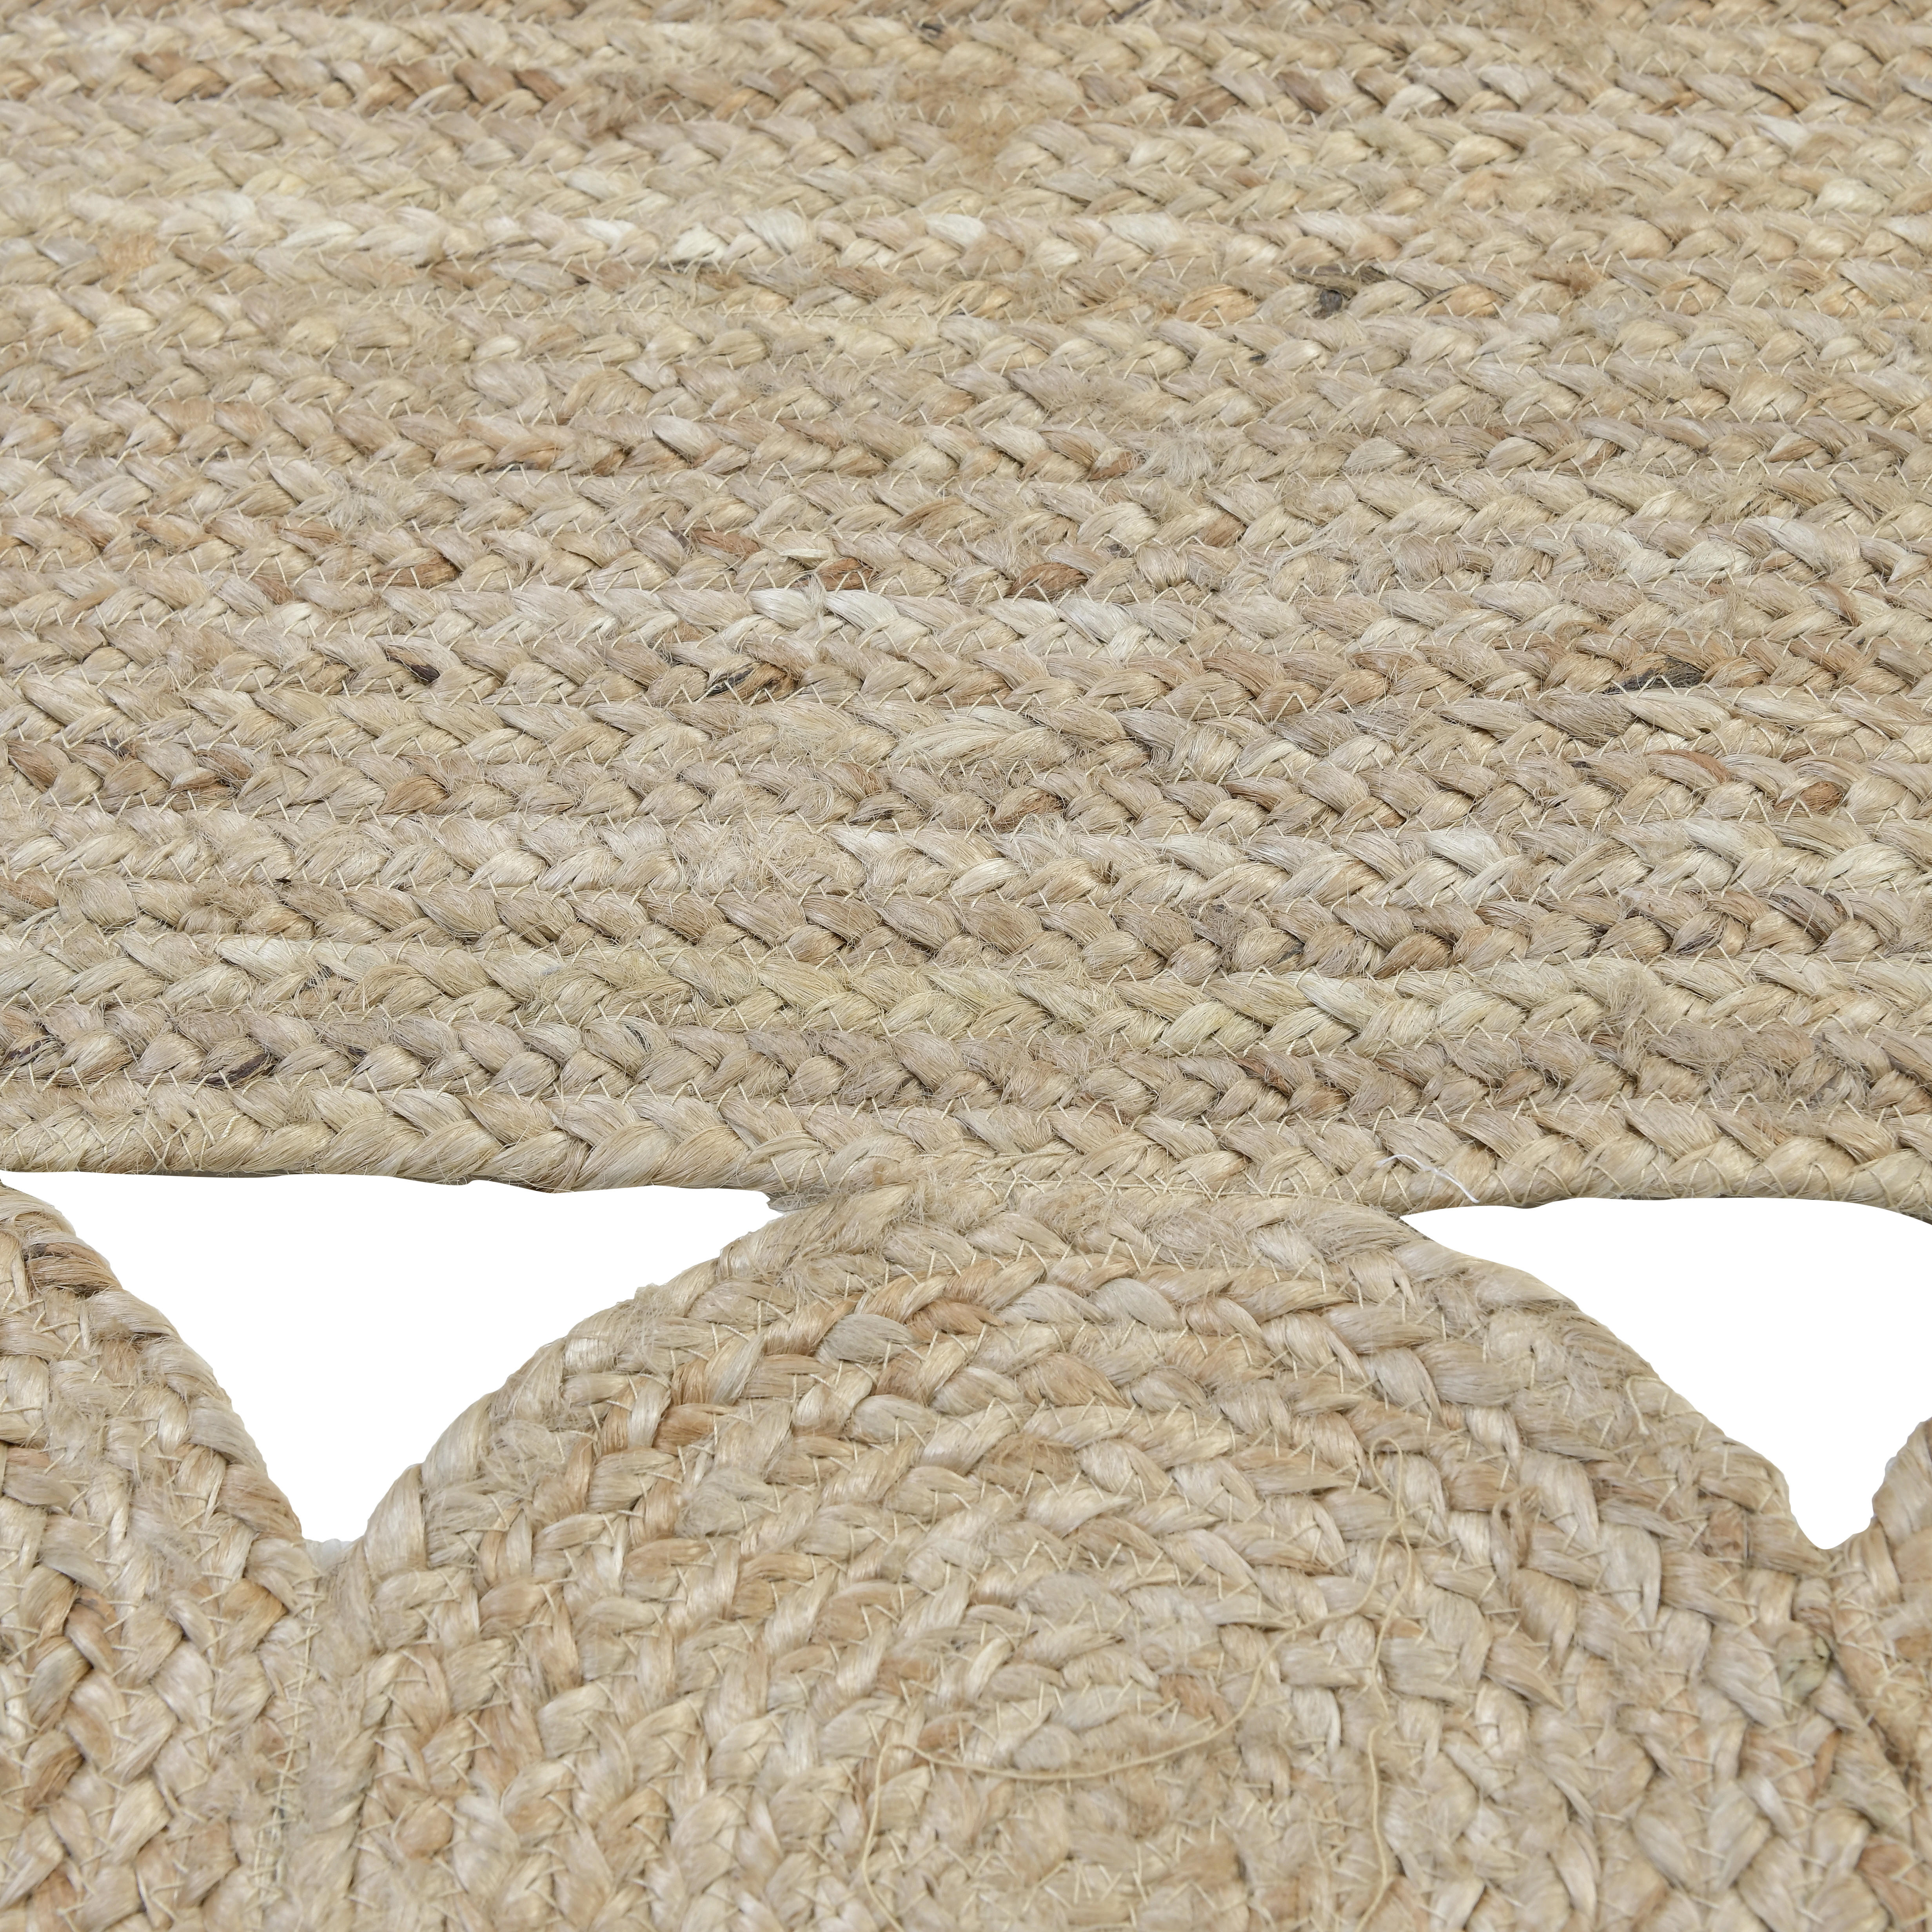 TEPPICH  - Beige, Trend, Textil (120/180/2cm)